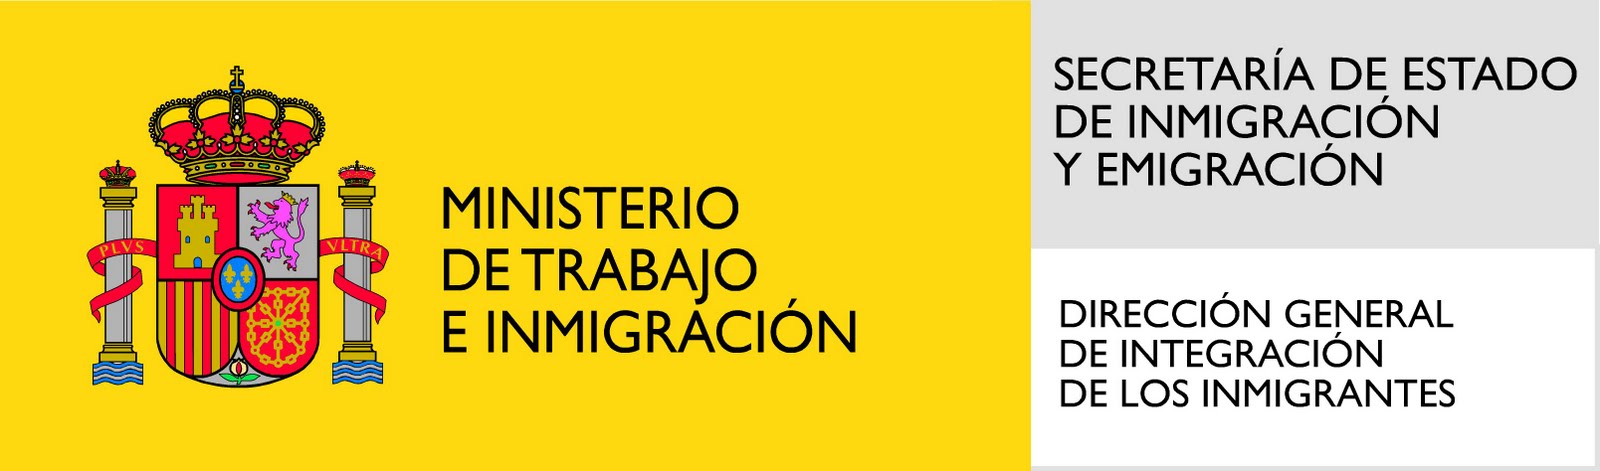 logo_ministerio_extranjejria